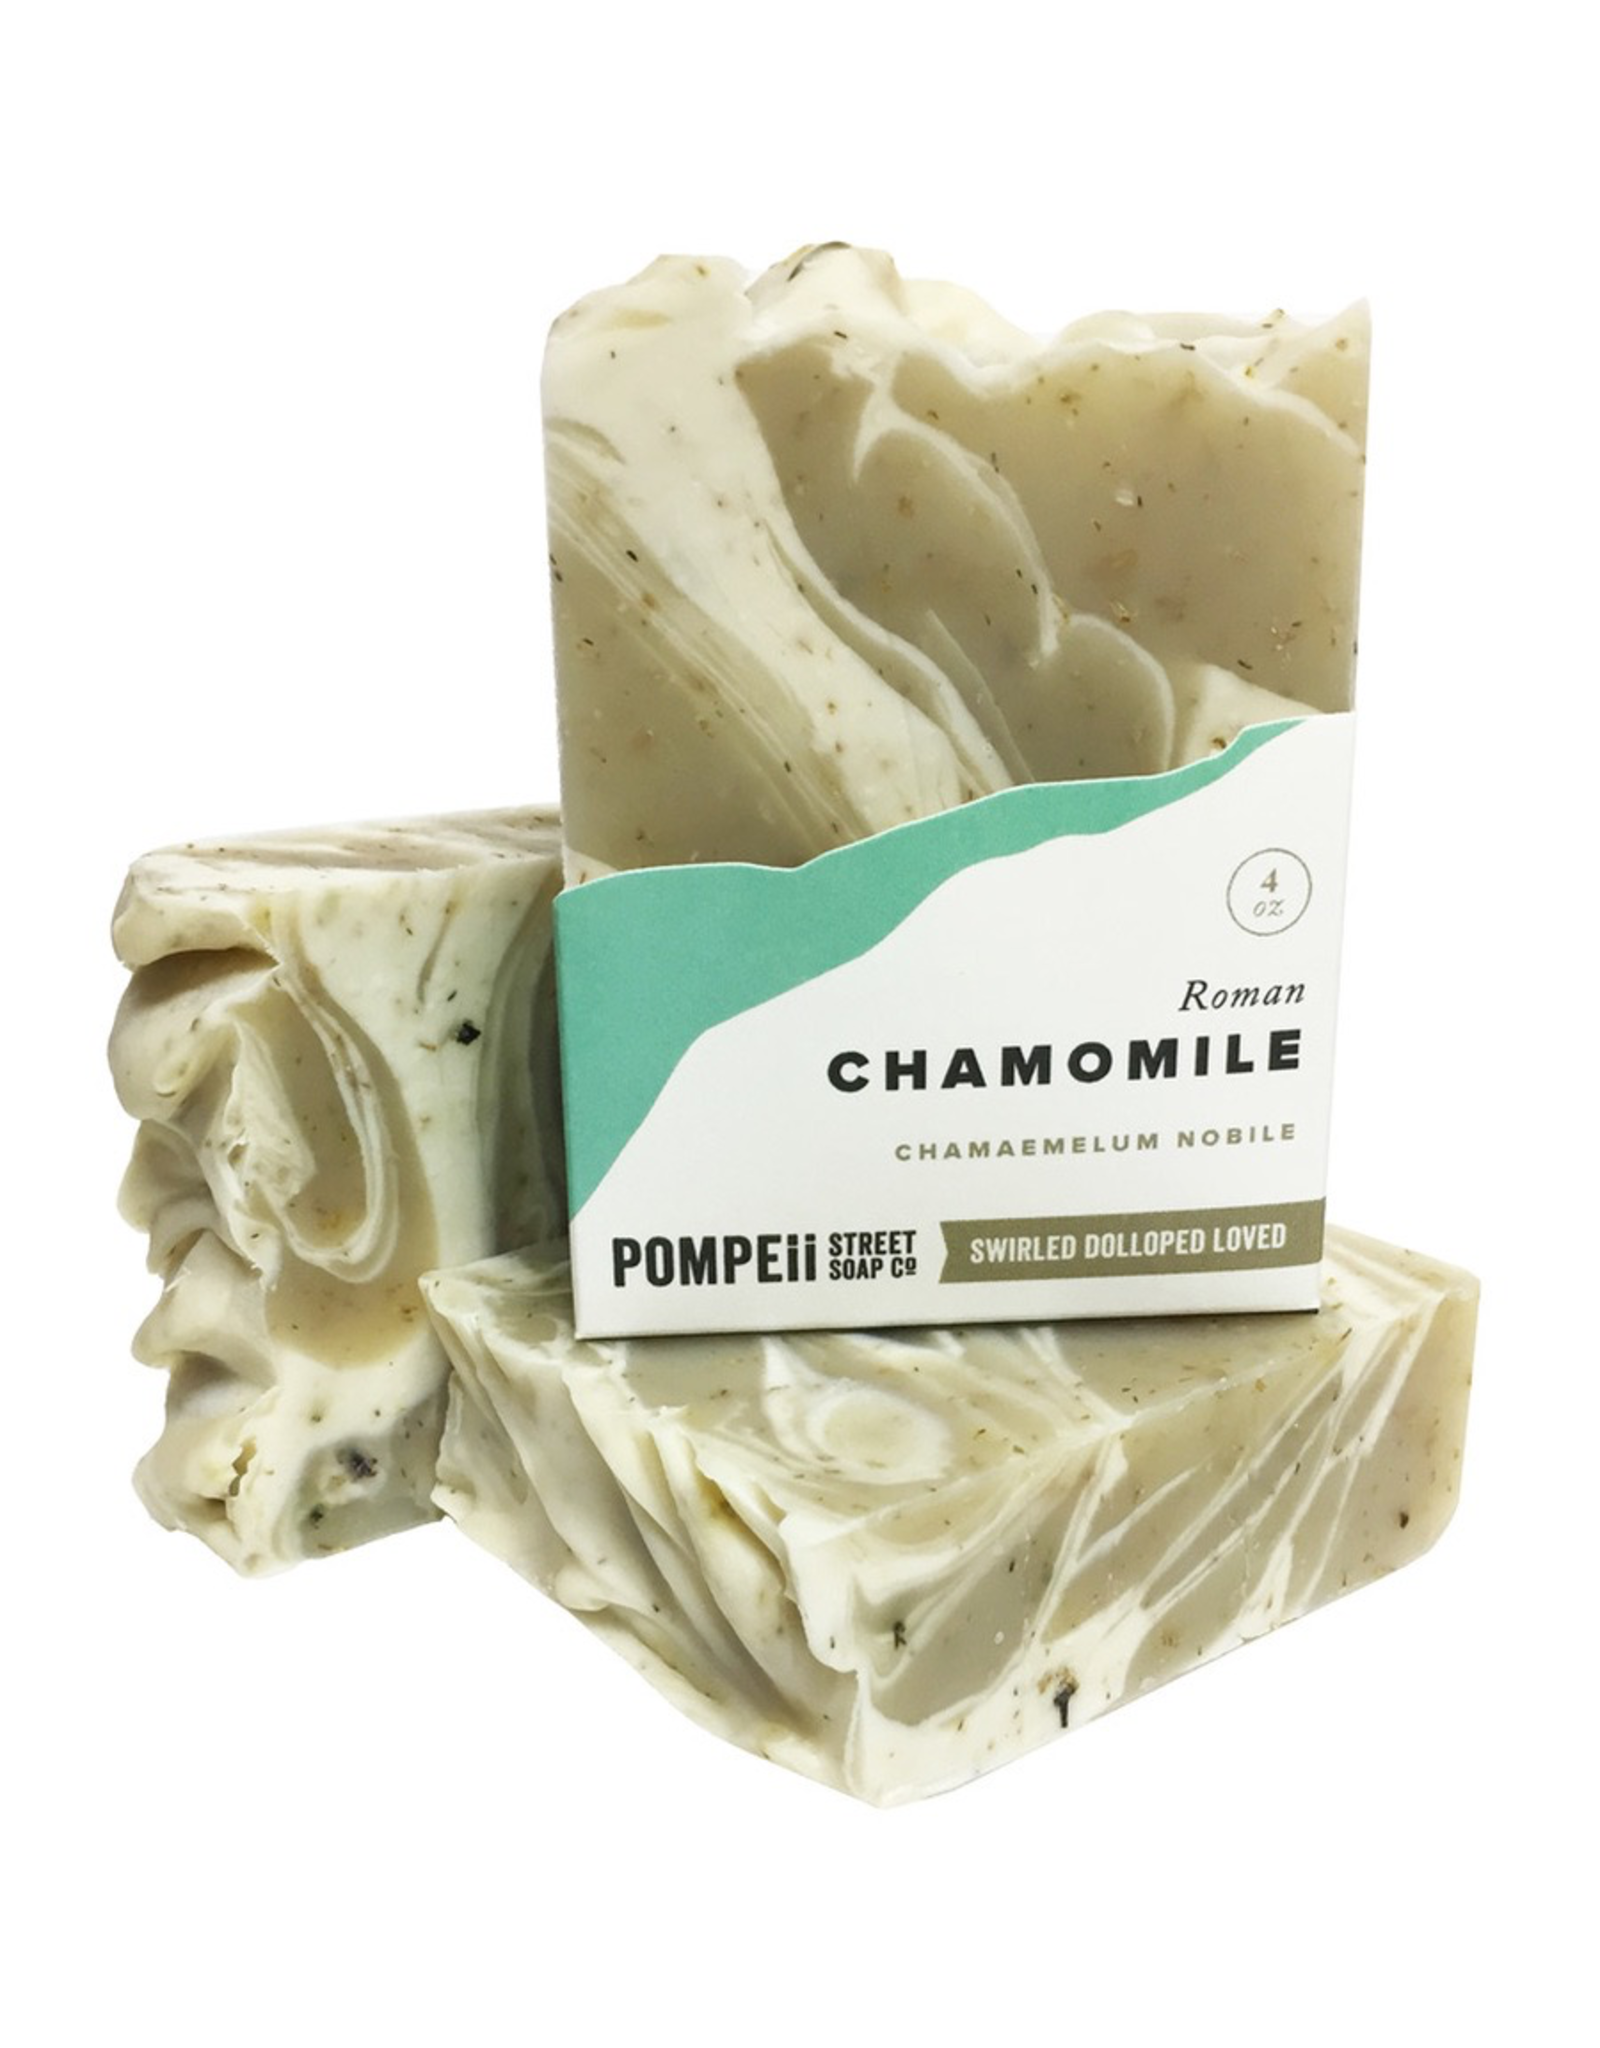 Pompeii Chamomile Soap 4 oz.